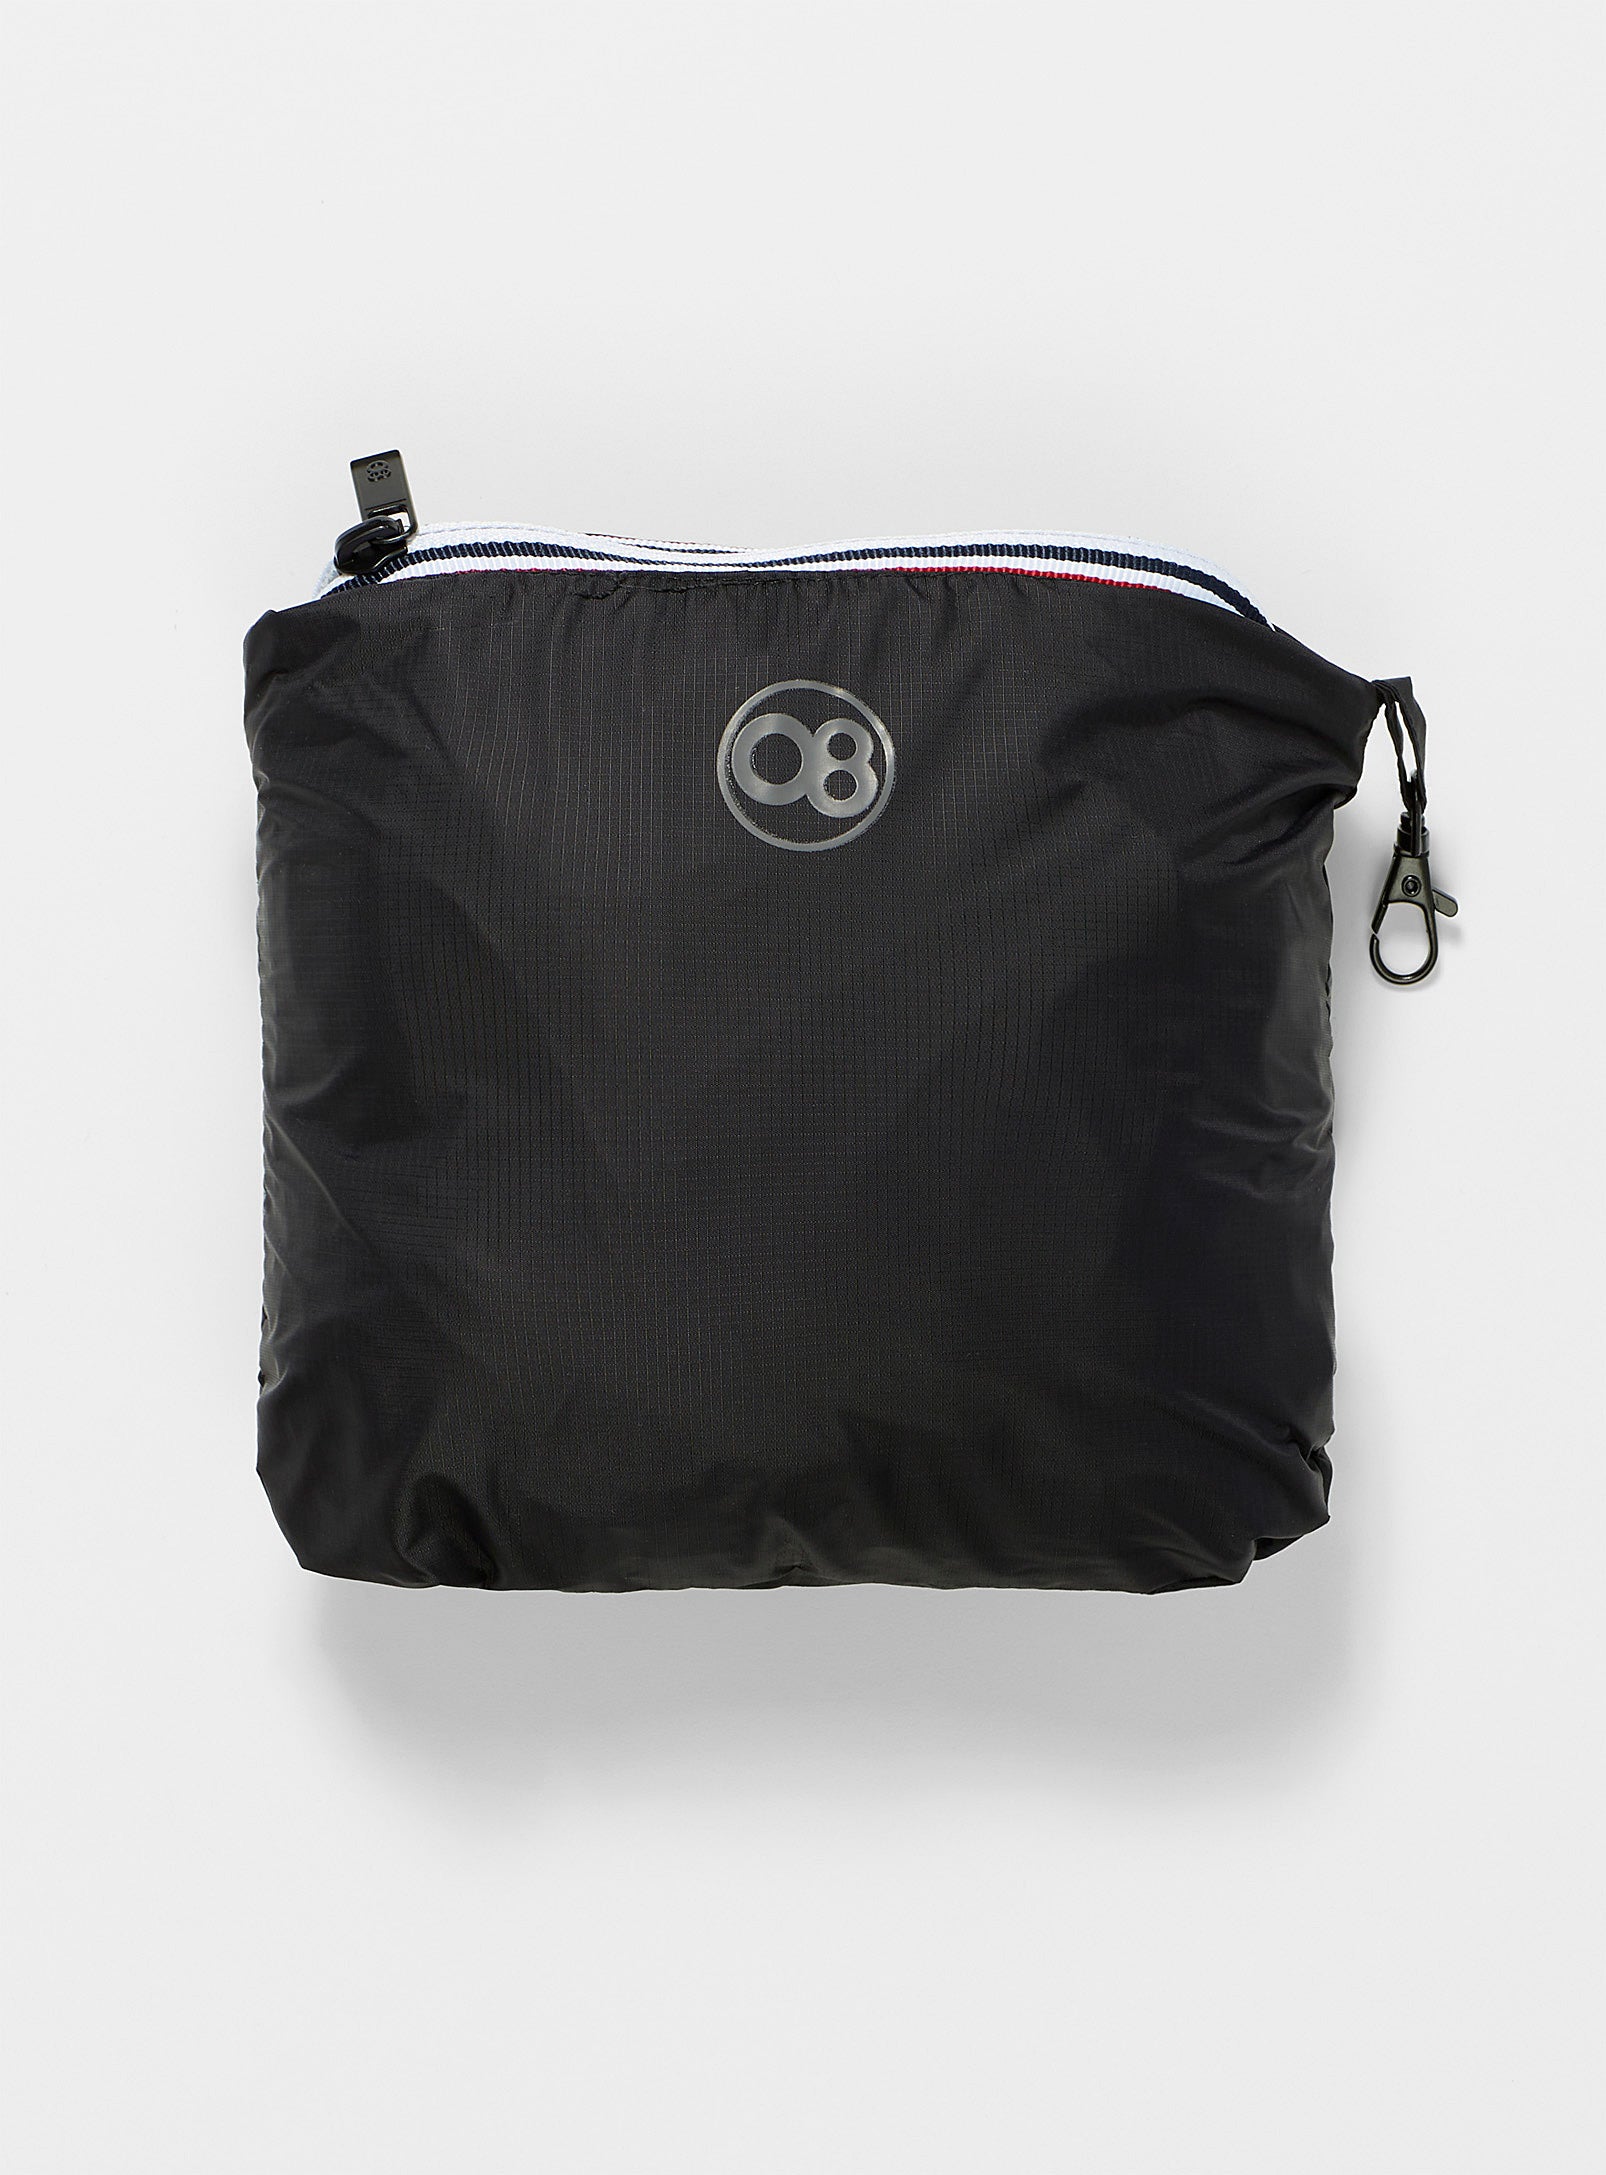 Alex - Black Quarter Zip Packable Rain Jacket - O8lifestyle